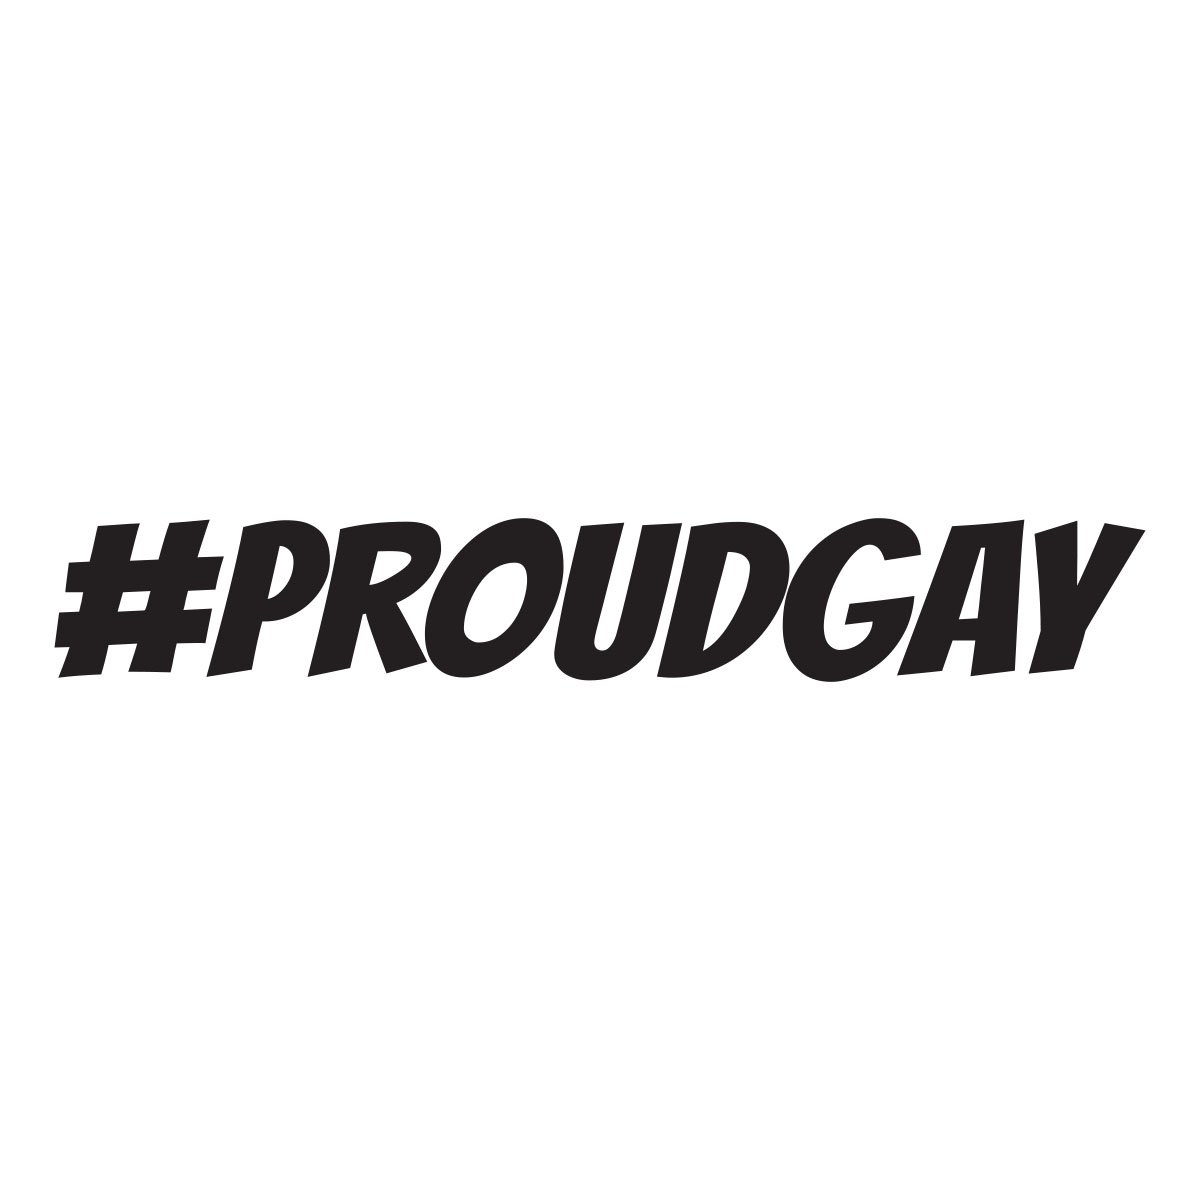 proudgay